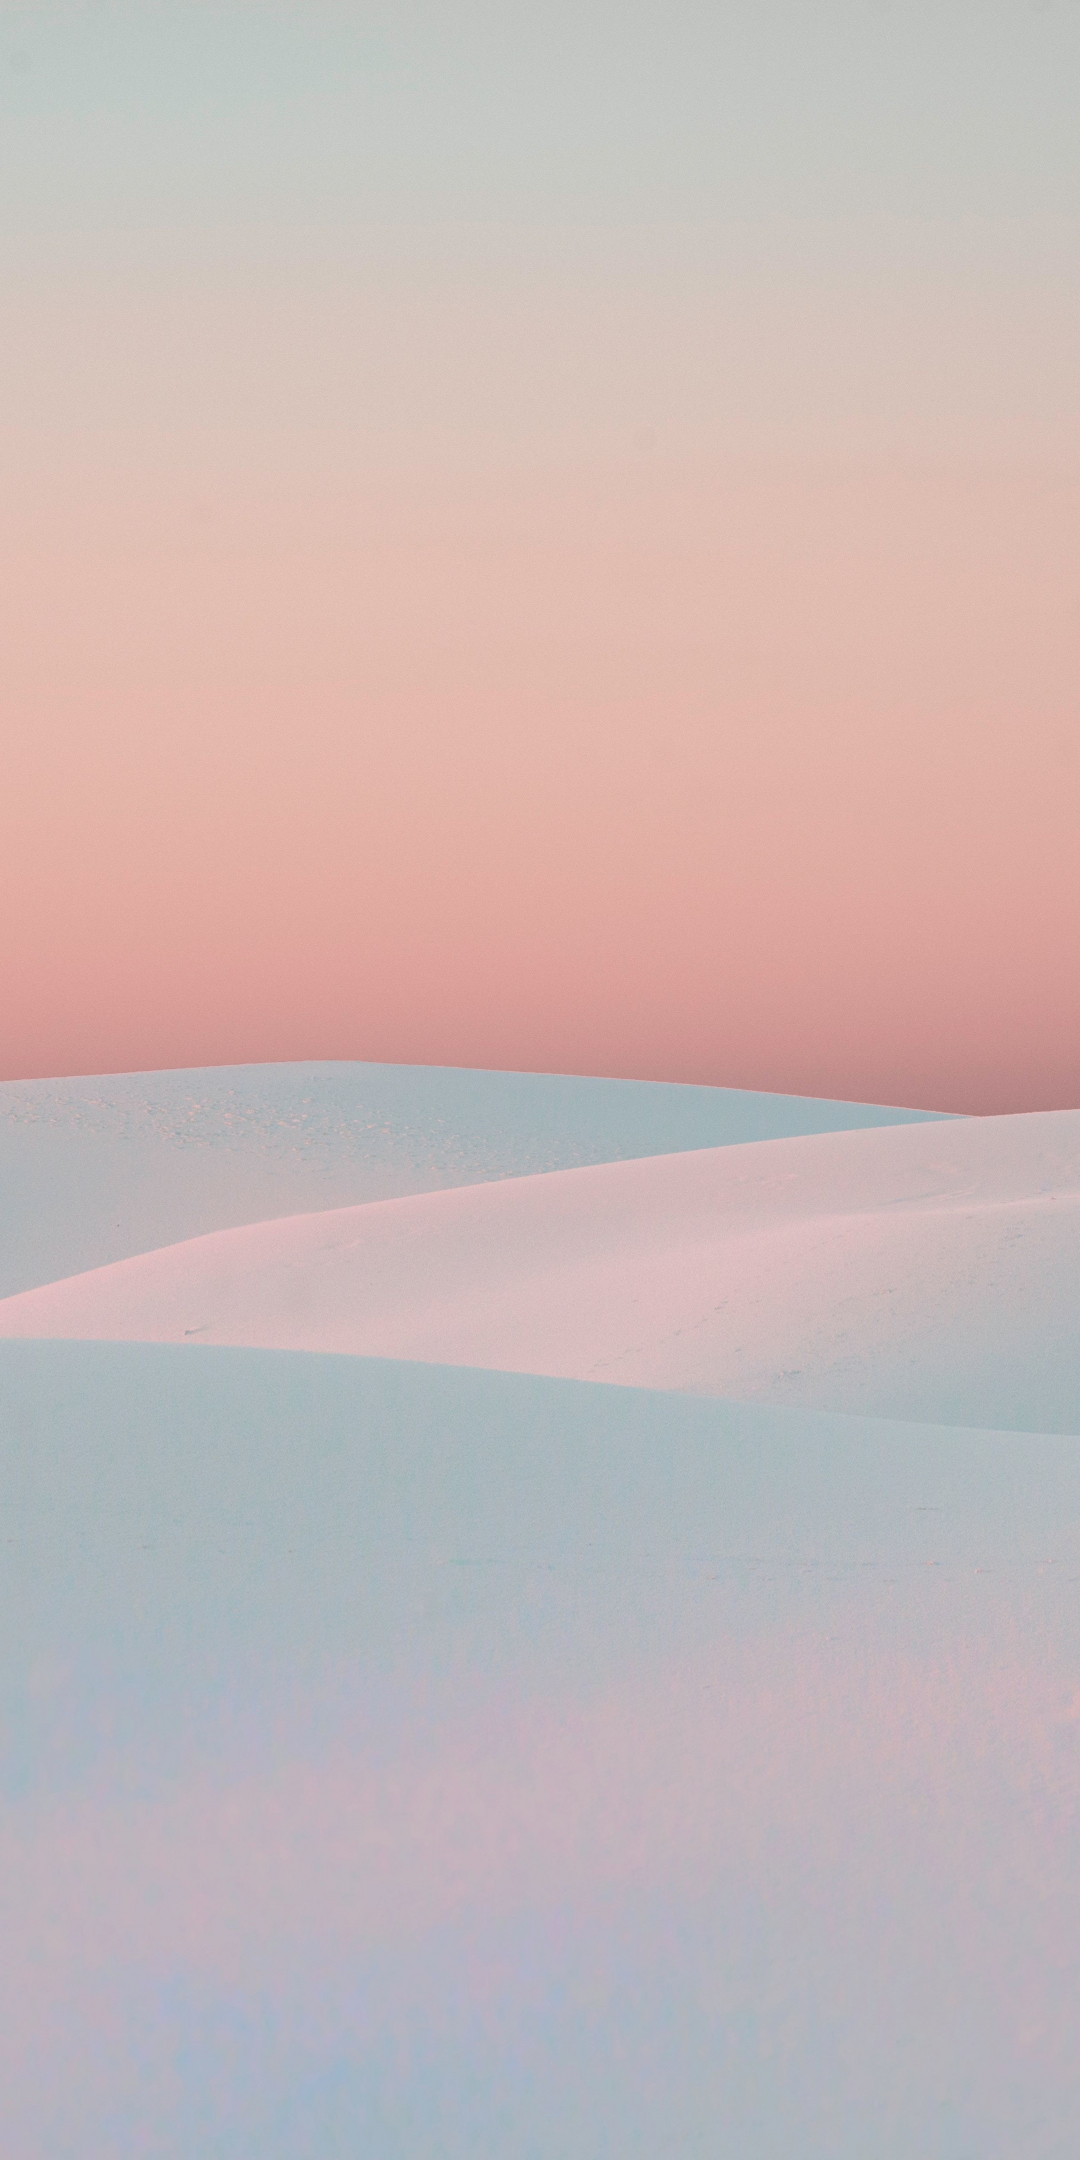 Sunset, white desert, dunes, nature, 1080x2160 wallpaper